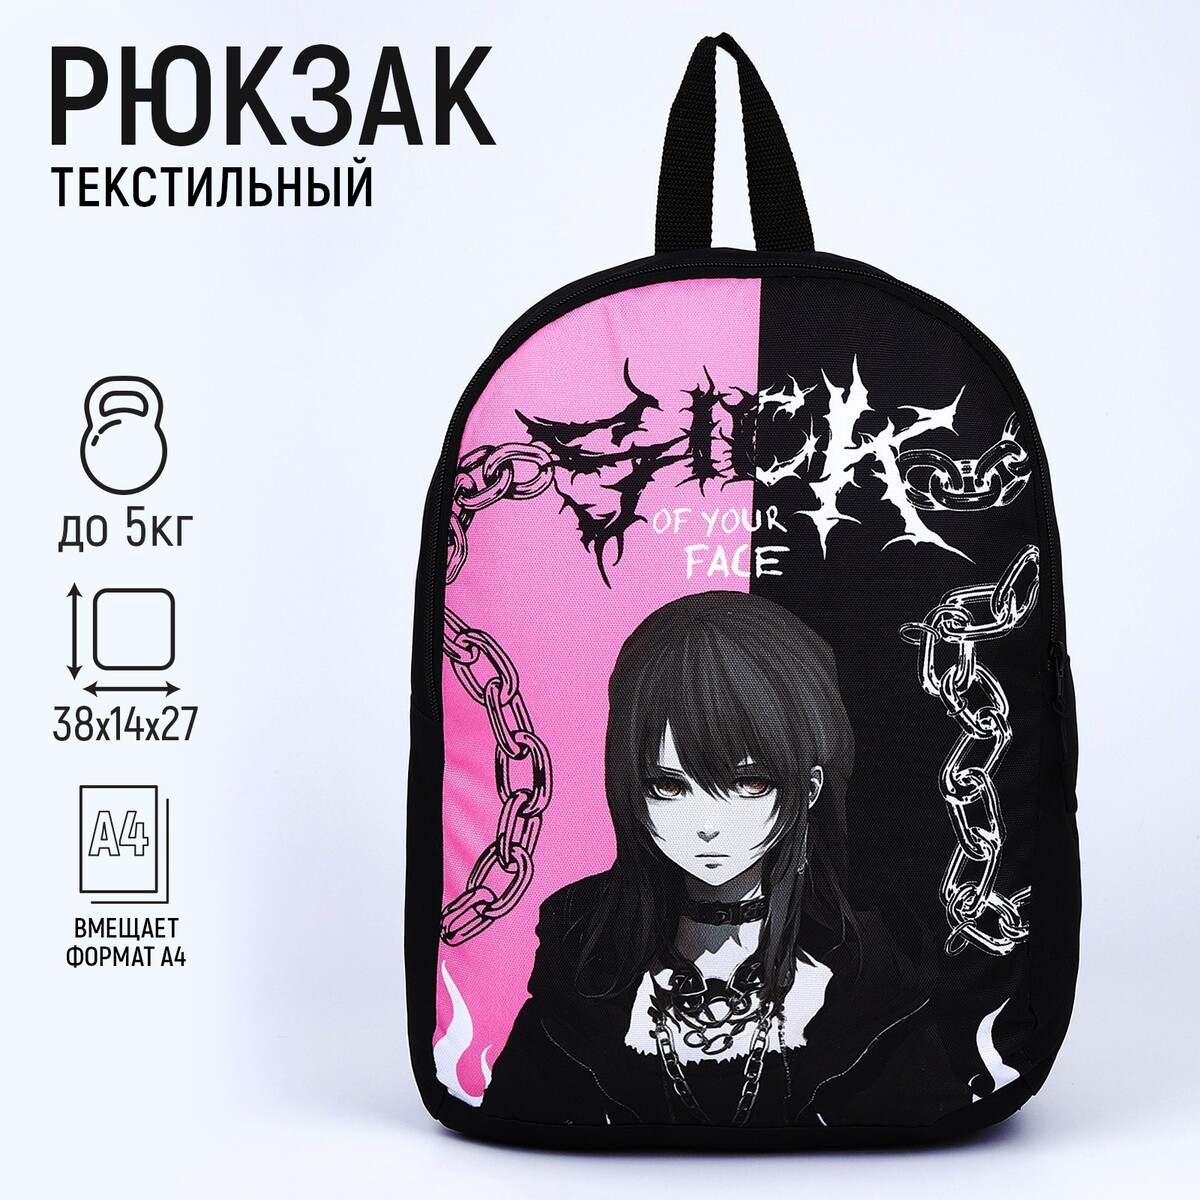 Рюкзак текстильный аниме, 38х14х27 см, цвет черный, розовый рюкзак текстильный кеды 38х14х27 см